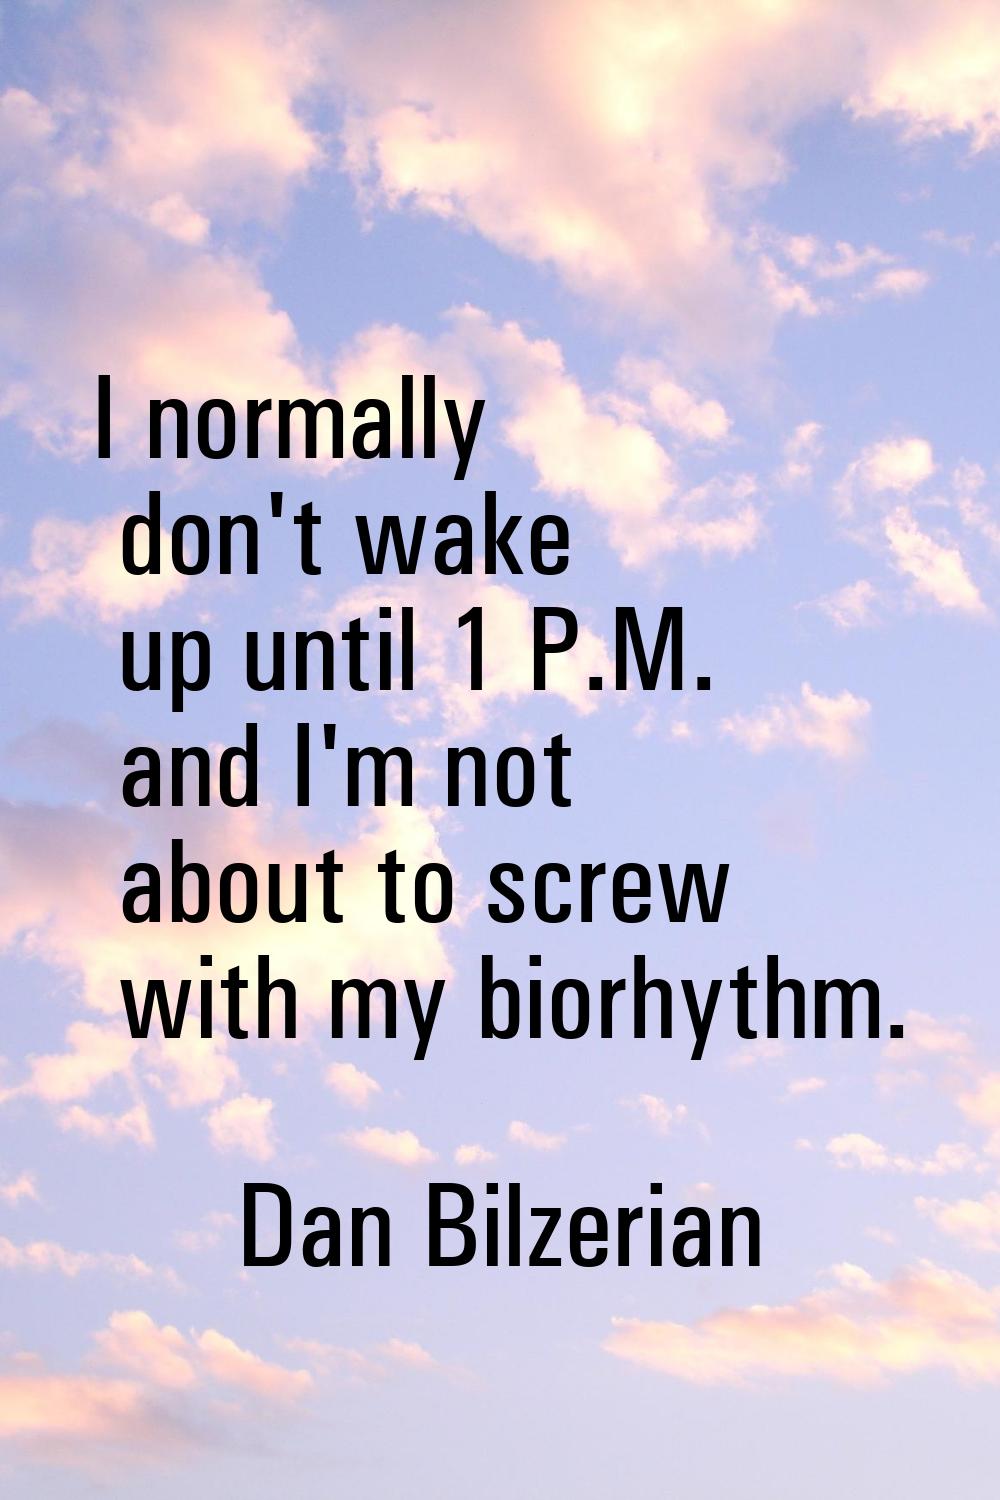 I normally don't wake up until 1 P.M. and I'm not about to screw with my biorhythm.